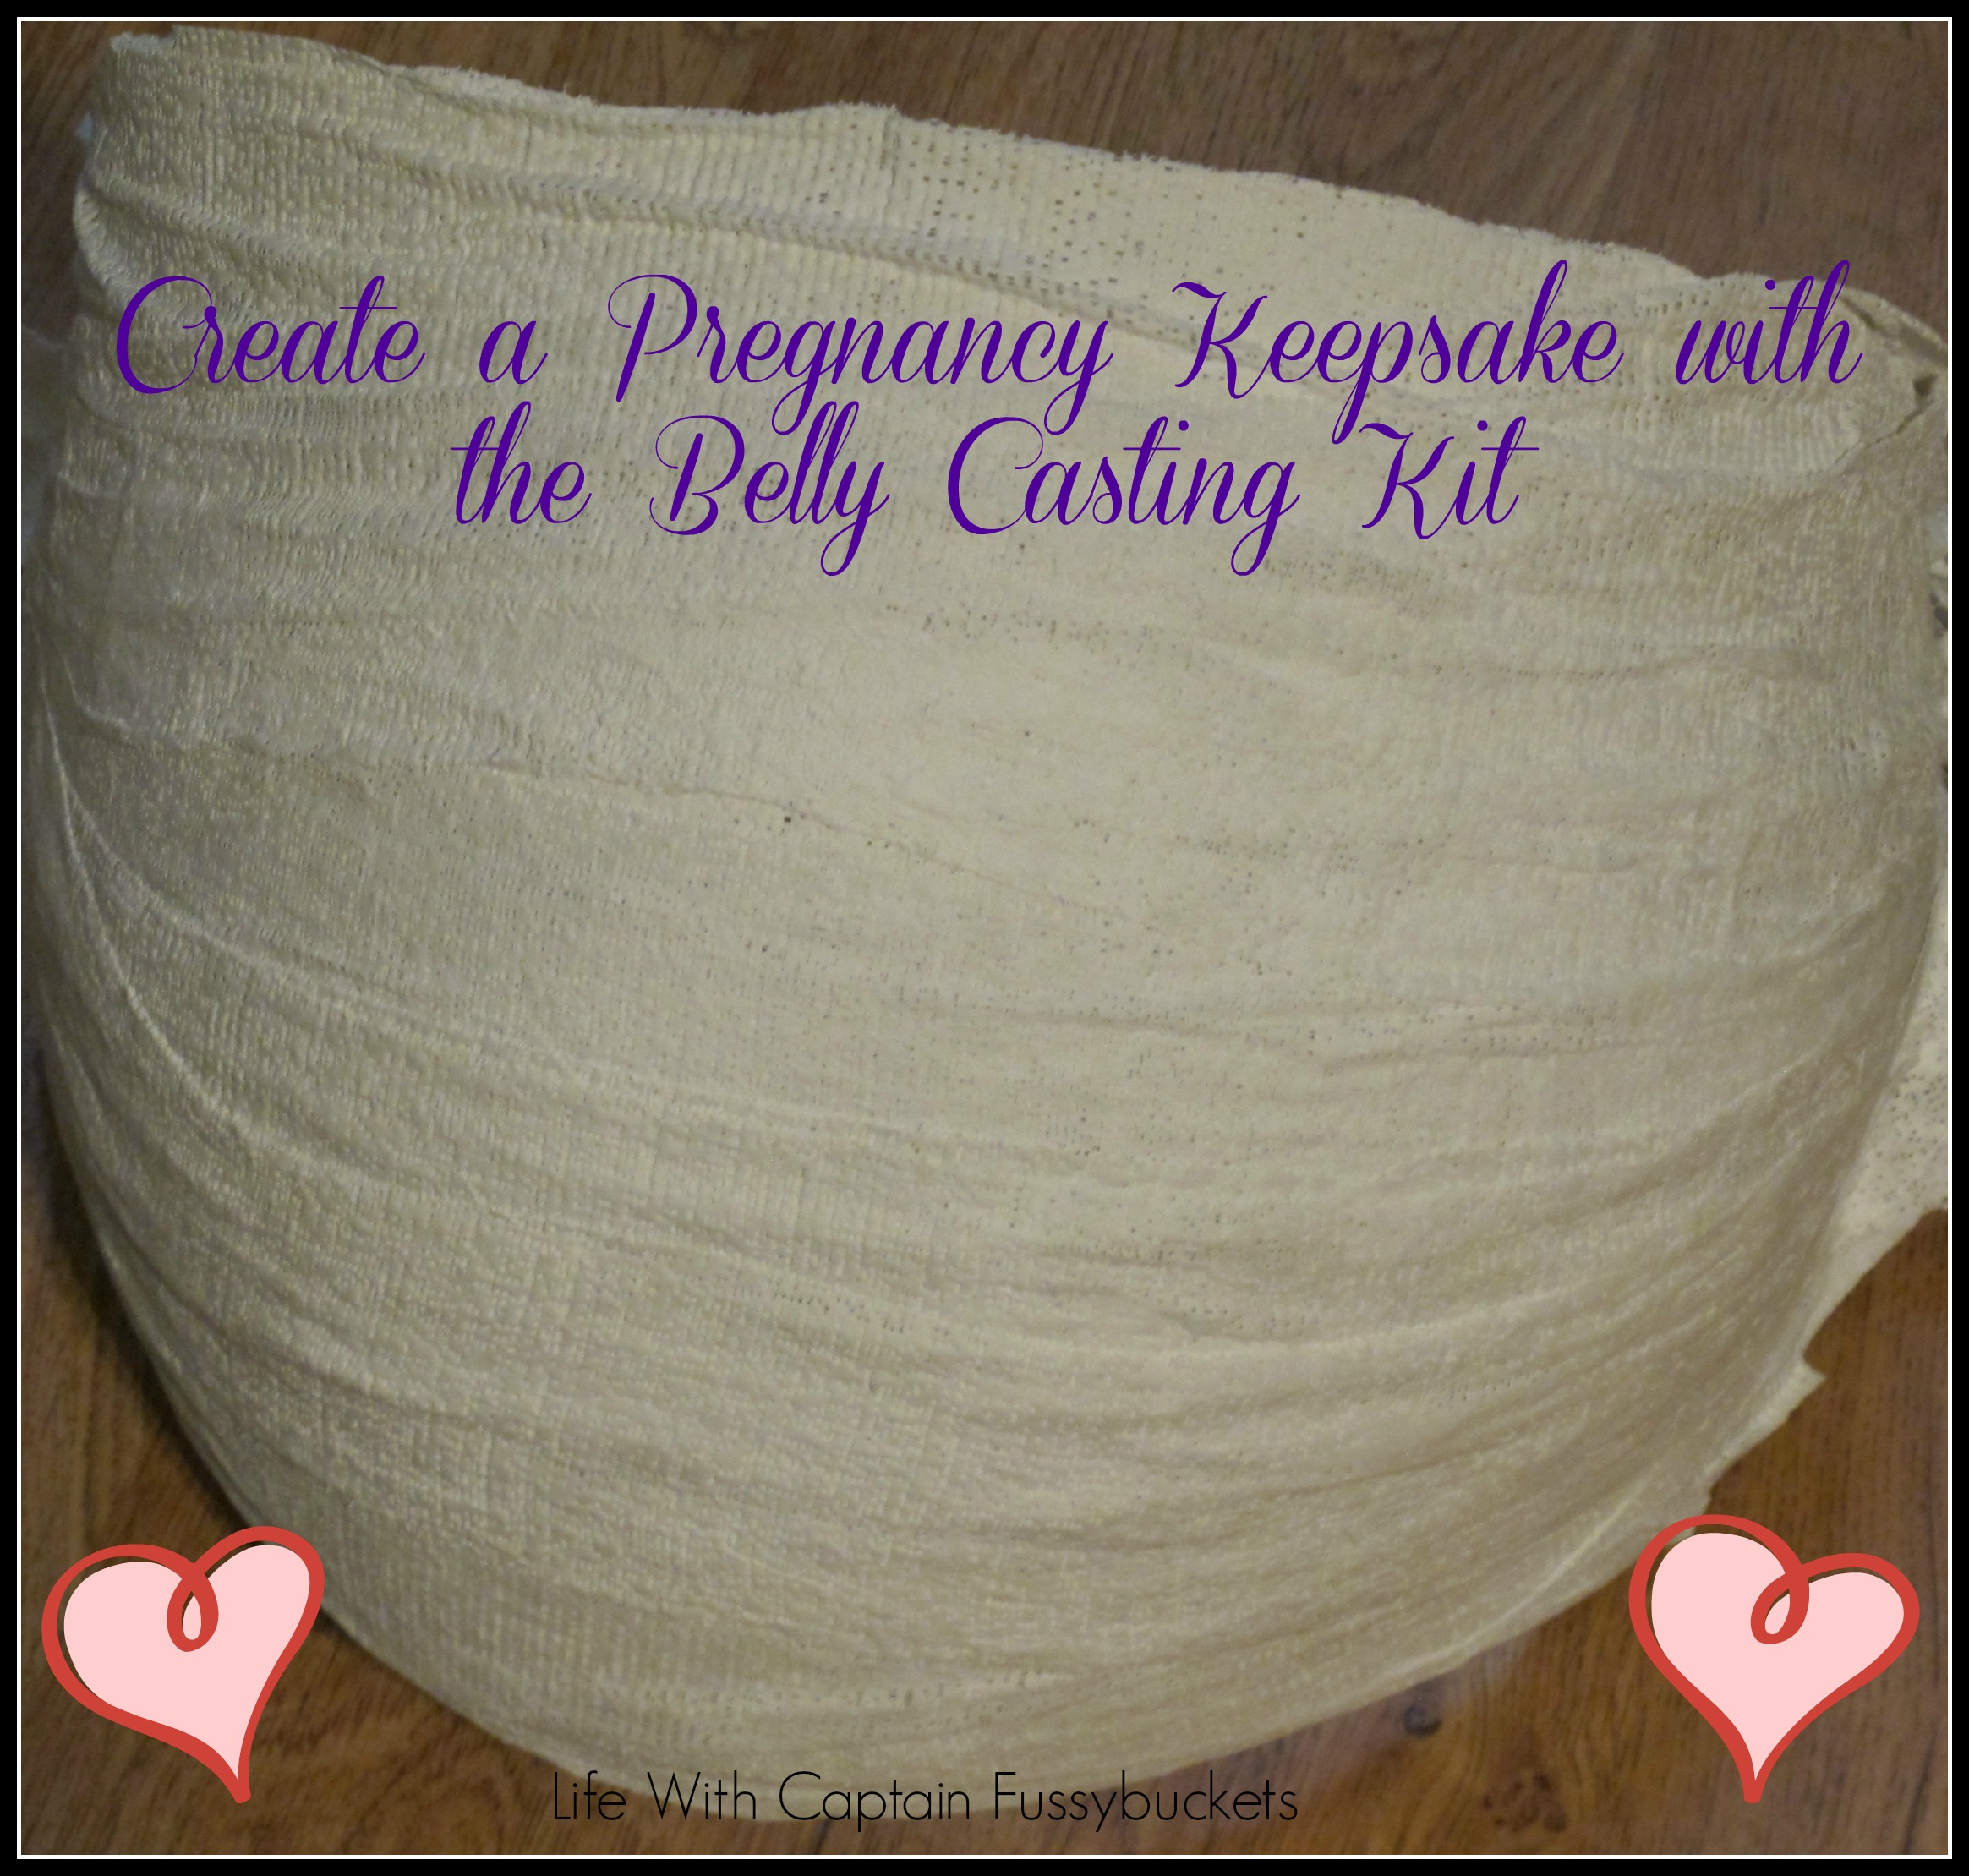 Pregnant Belly Casting Kit - A Precious Keepsake